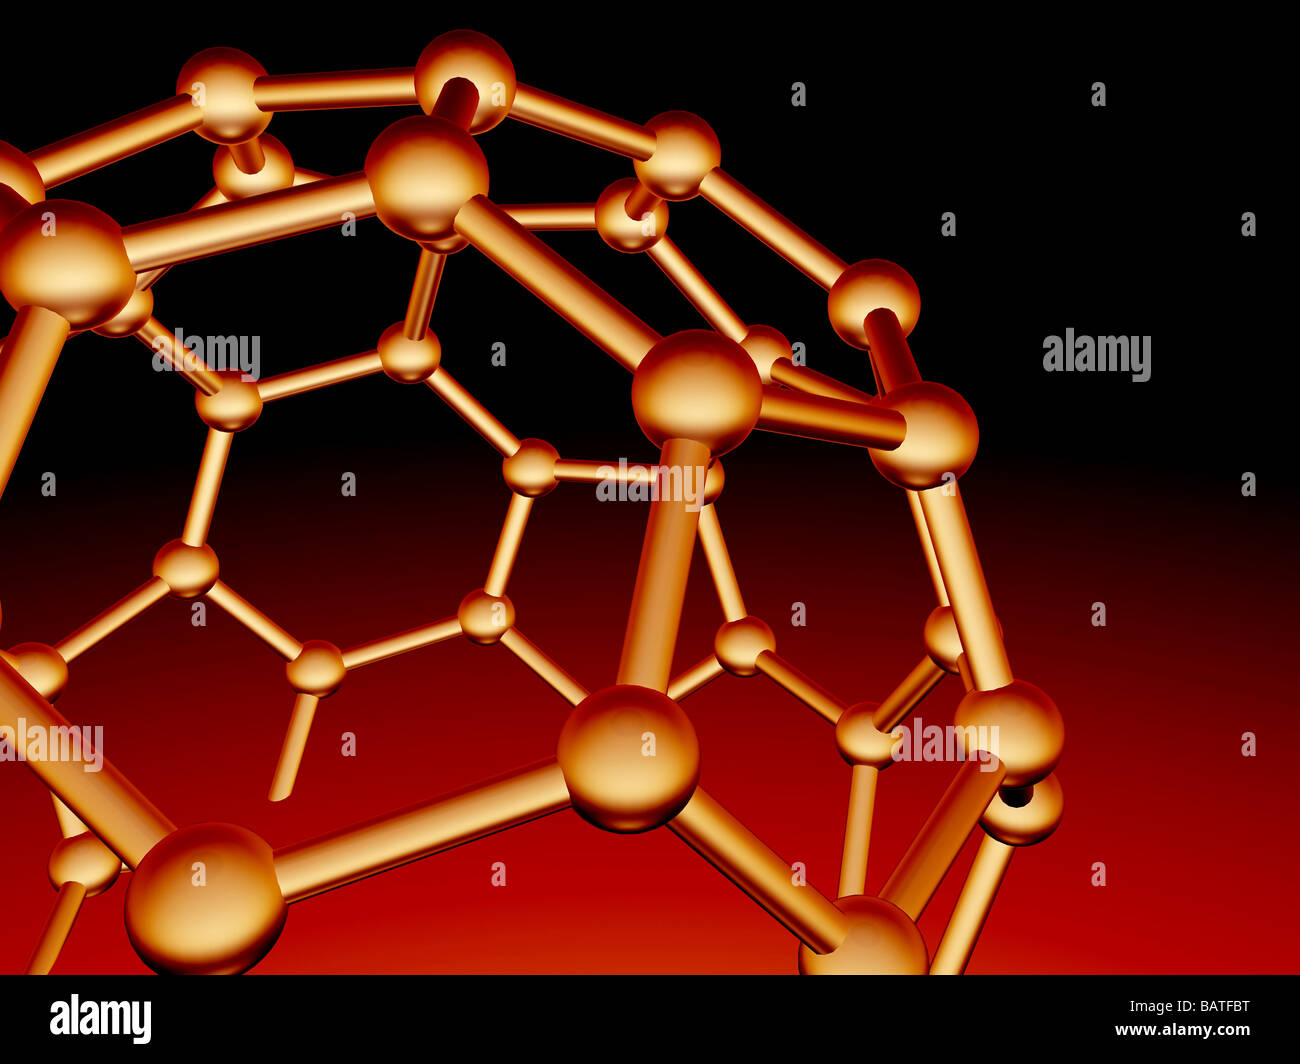 Buckminsterfulleren Molekül. Molekulares Modell des ein Fulleren-Molekül, ein strukturell unterschiedliche form(allotrope) des Kohlenstoffs. Stockfoto